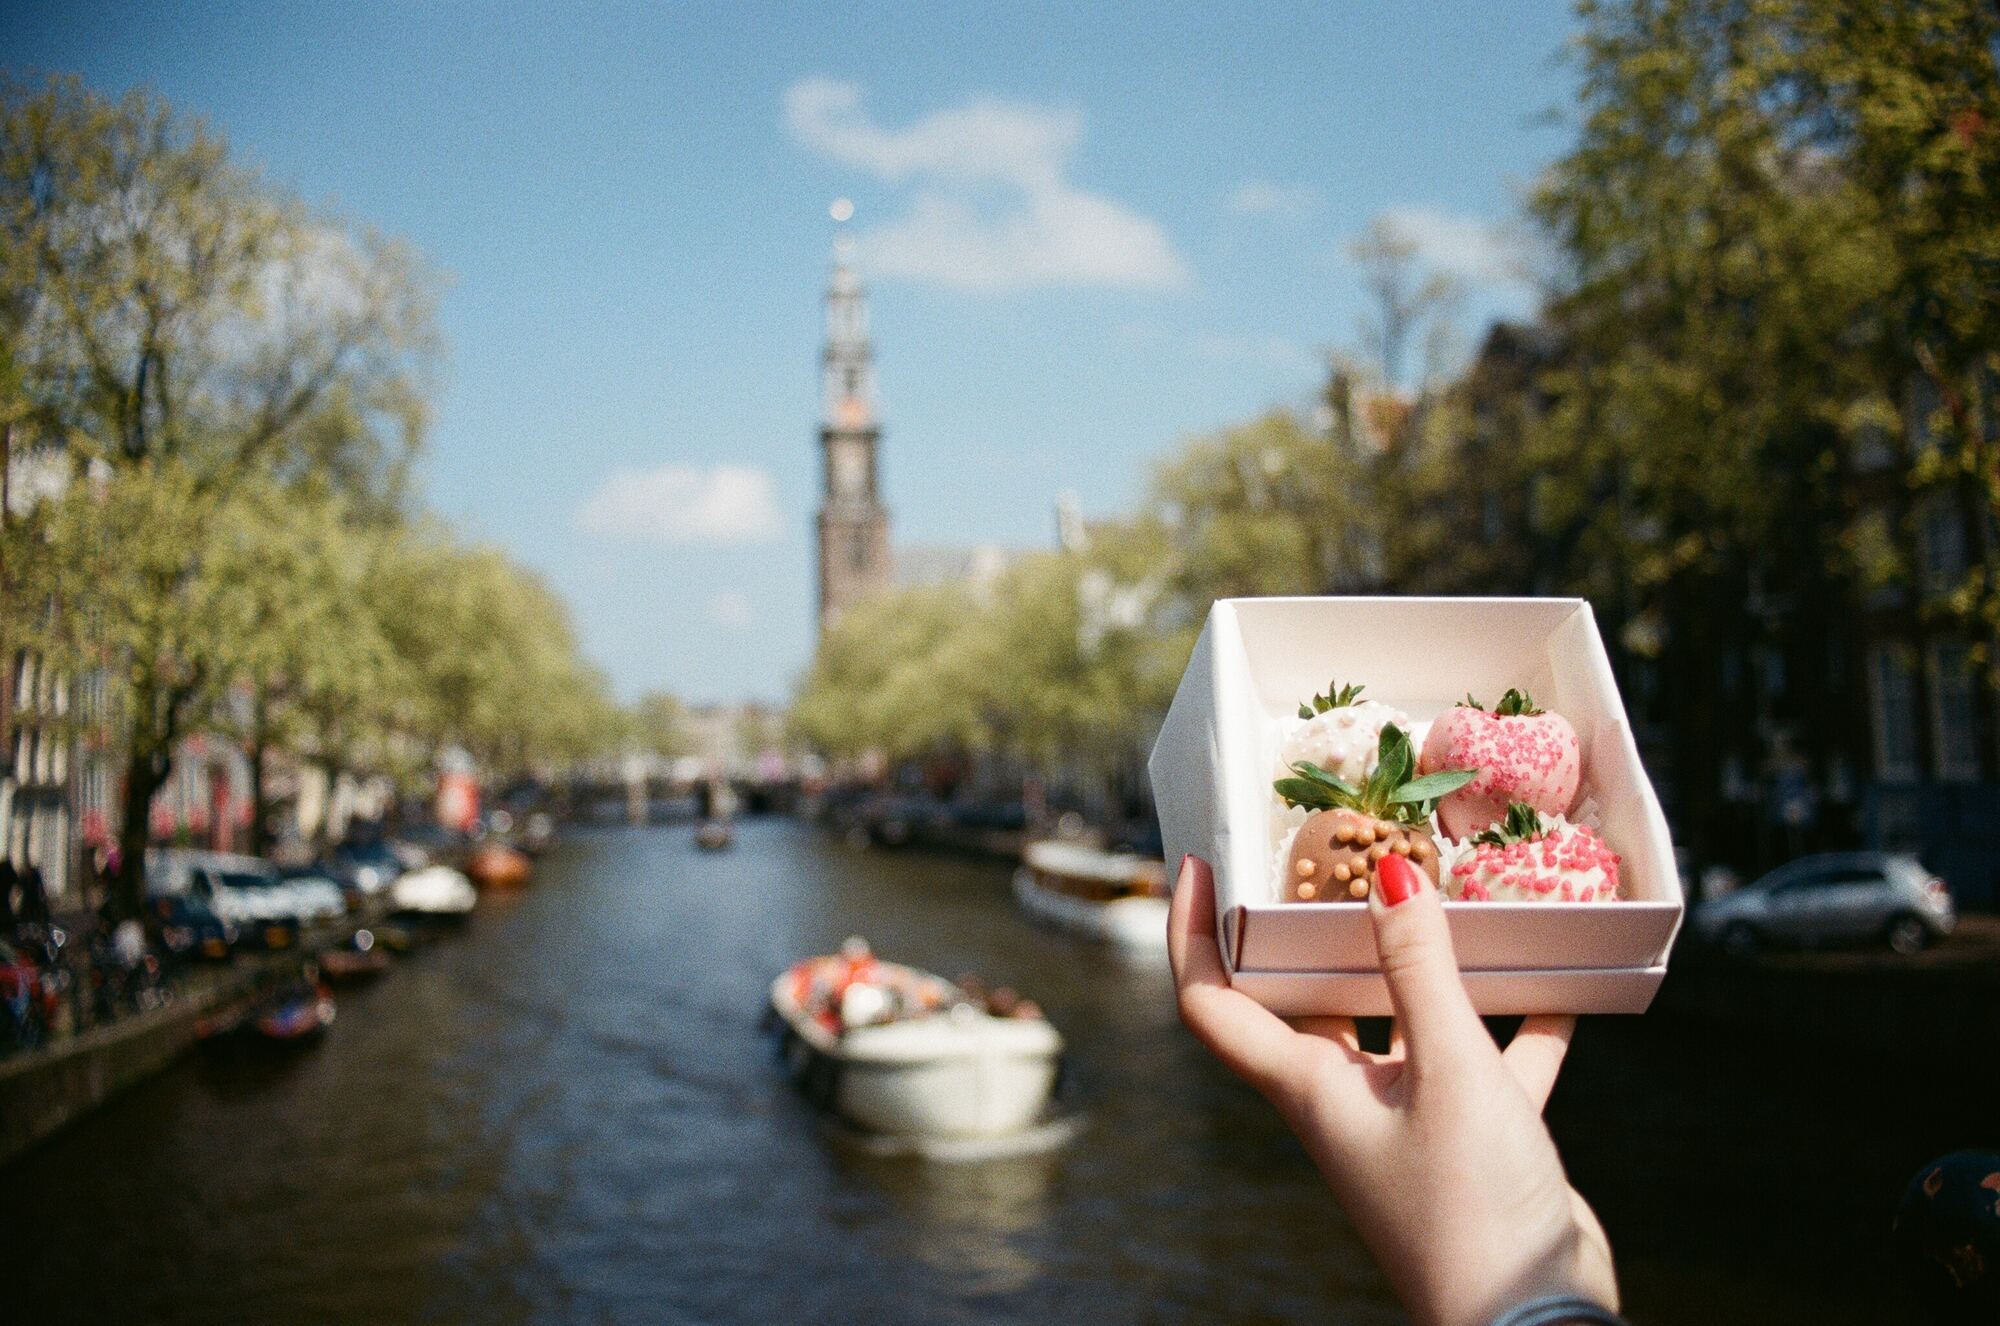 Как сэкономить на поездке в Амстердам: 6 проверенных способов